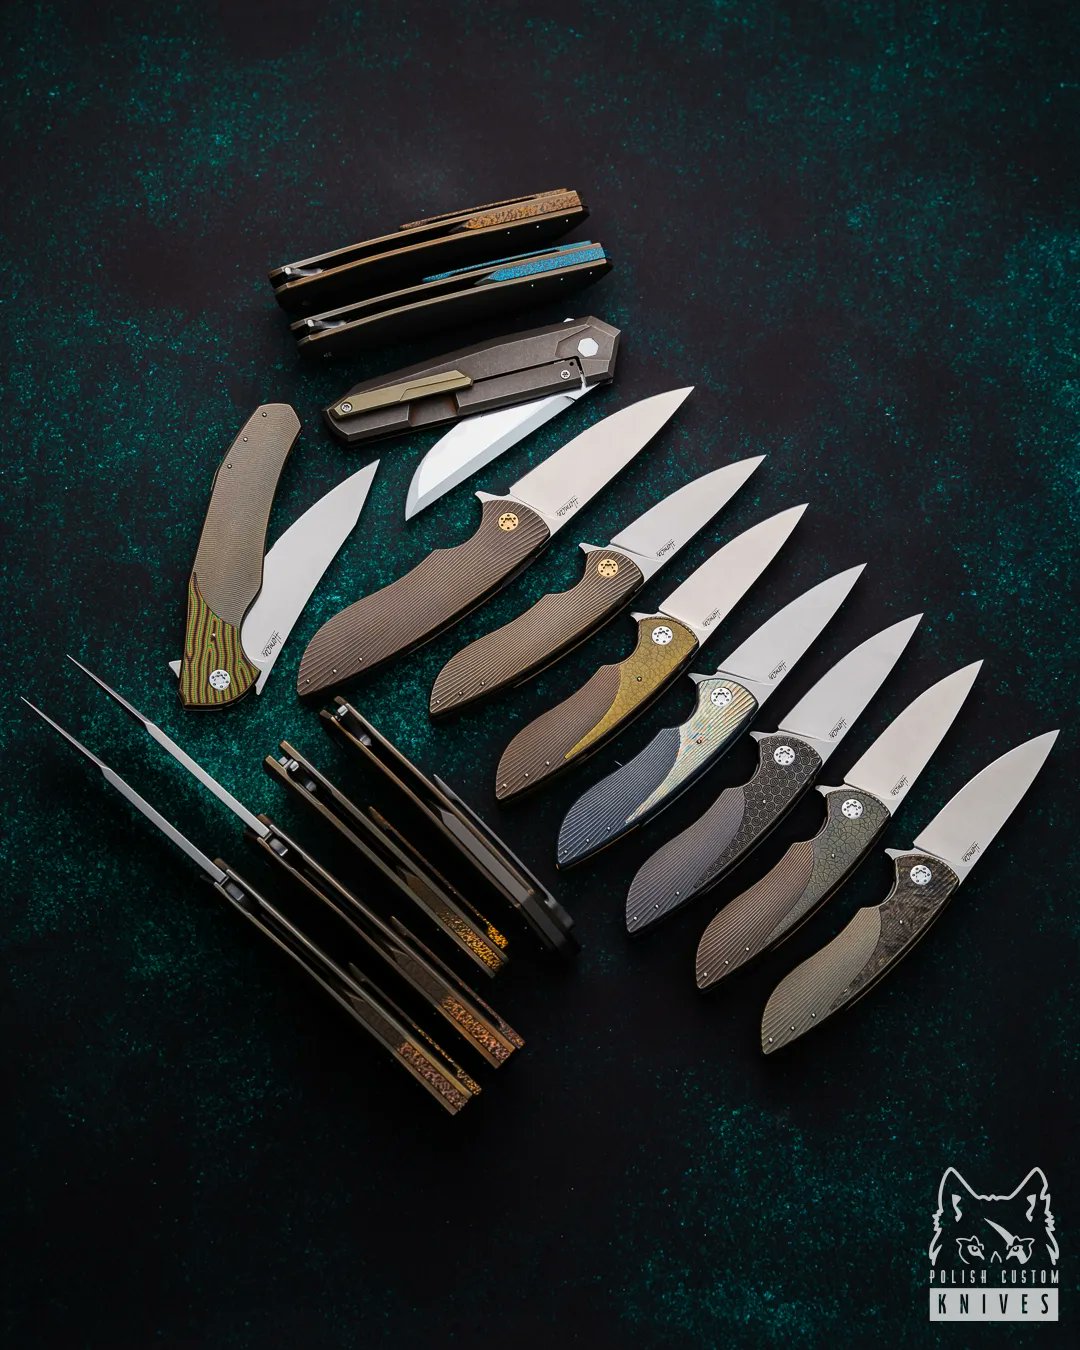 Polish Custom Knives (@PolishKnives) / X